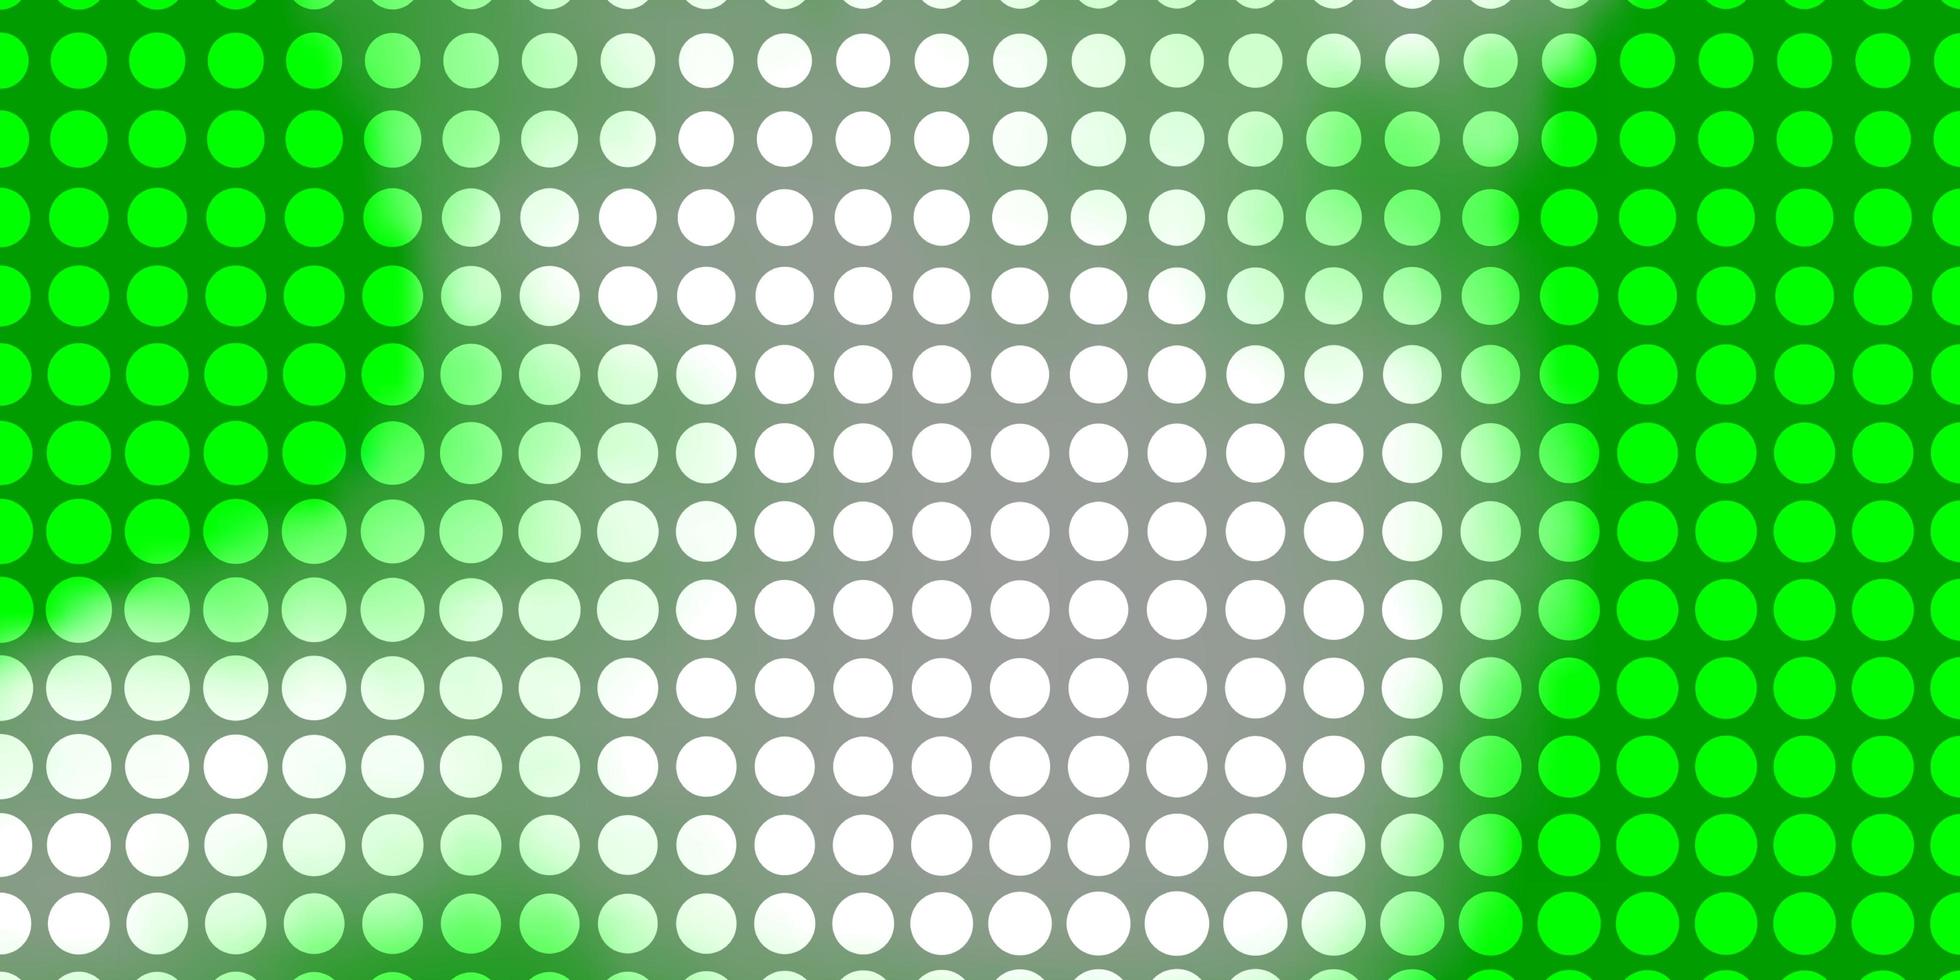 textura de vector verde claro con círculos.